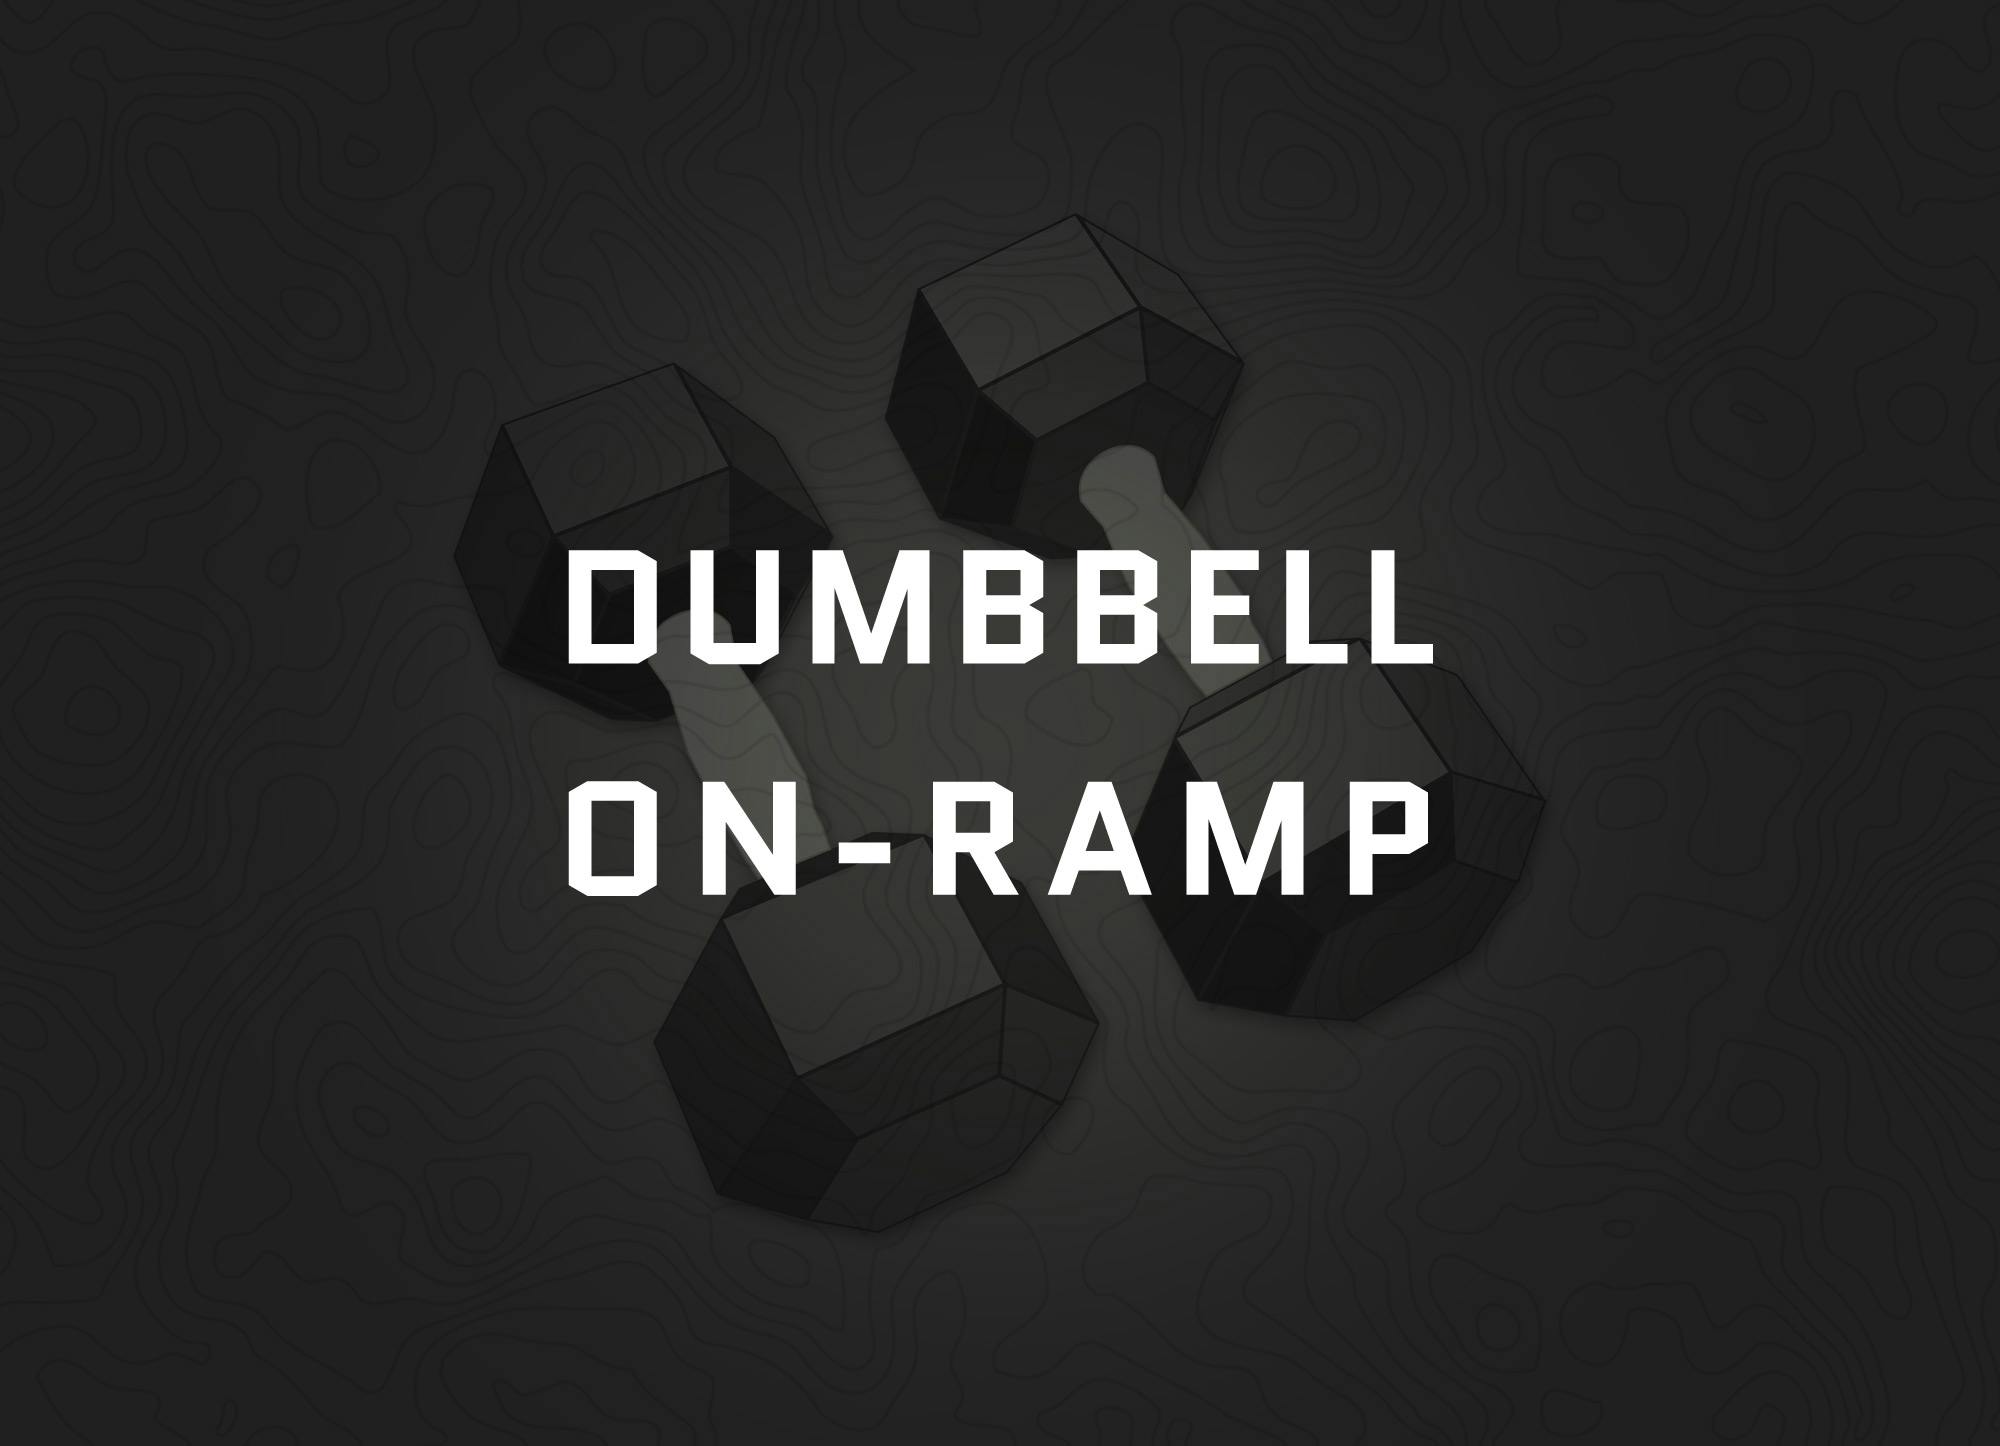 Dumbbell On-ramp